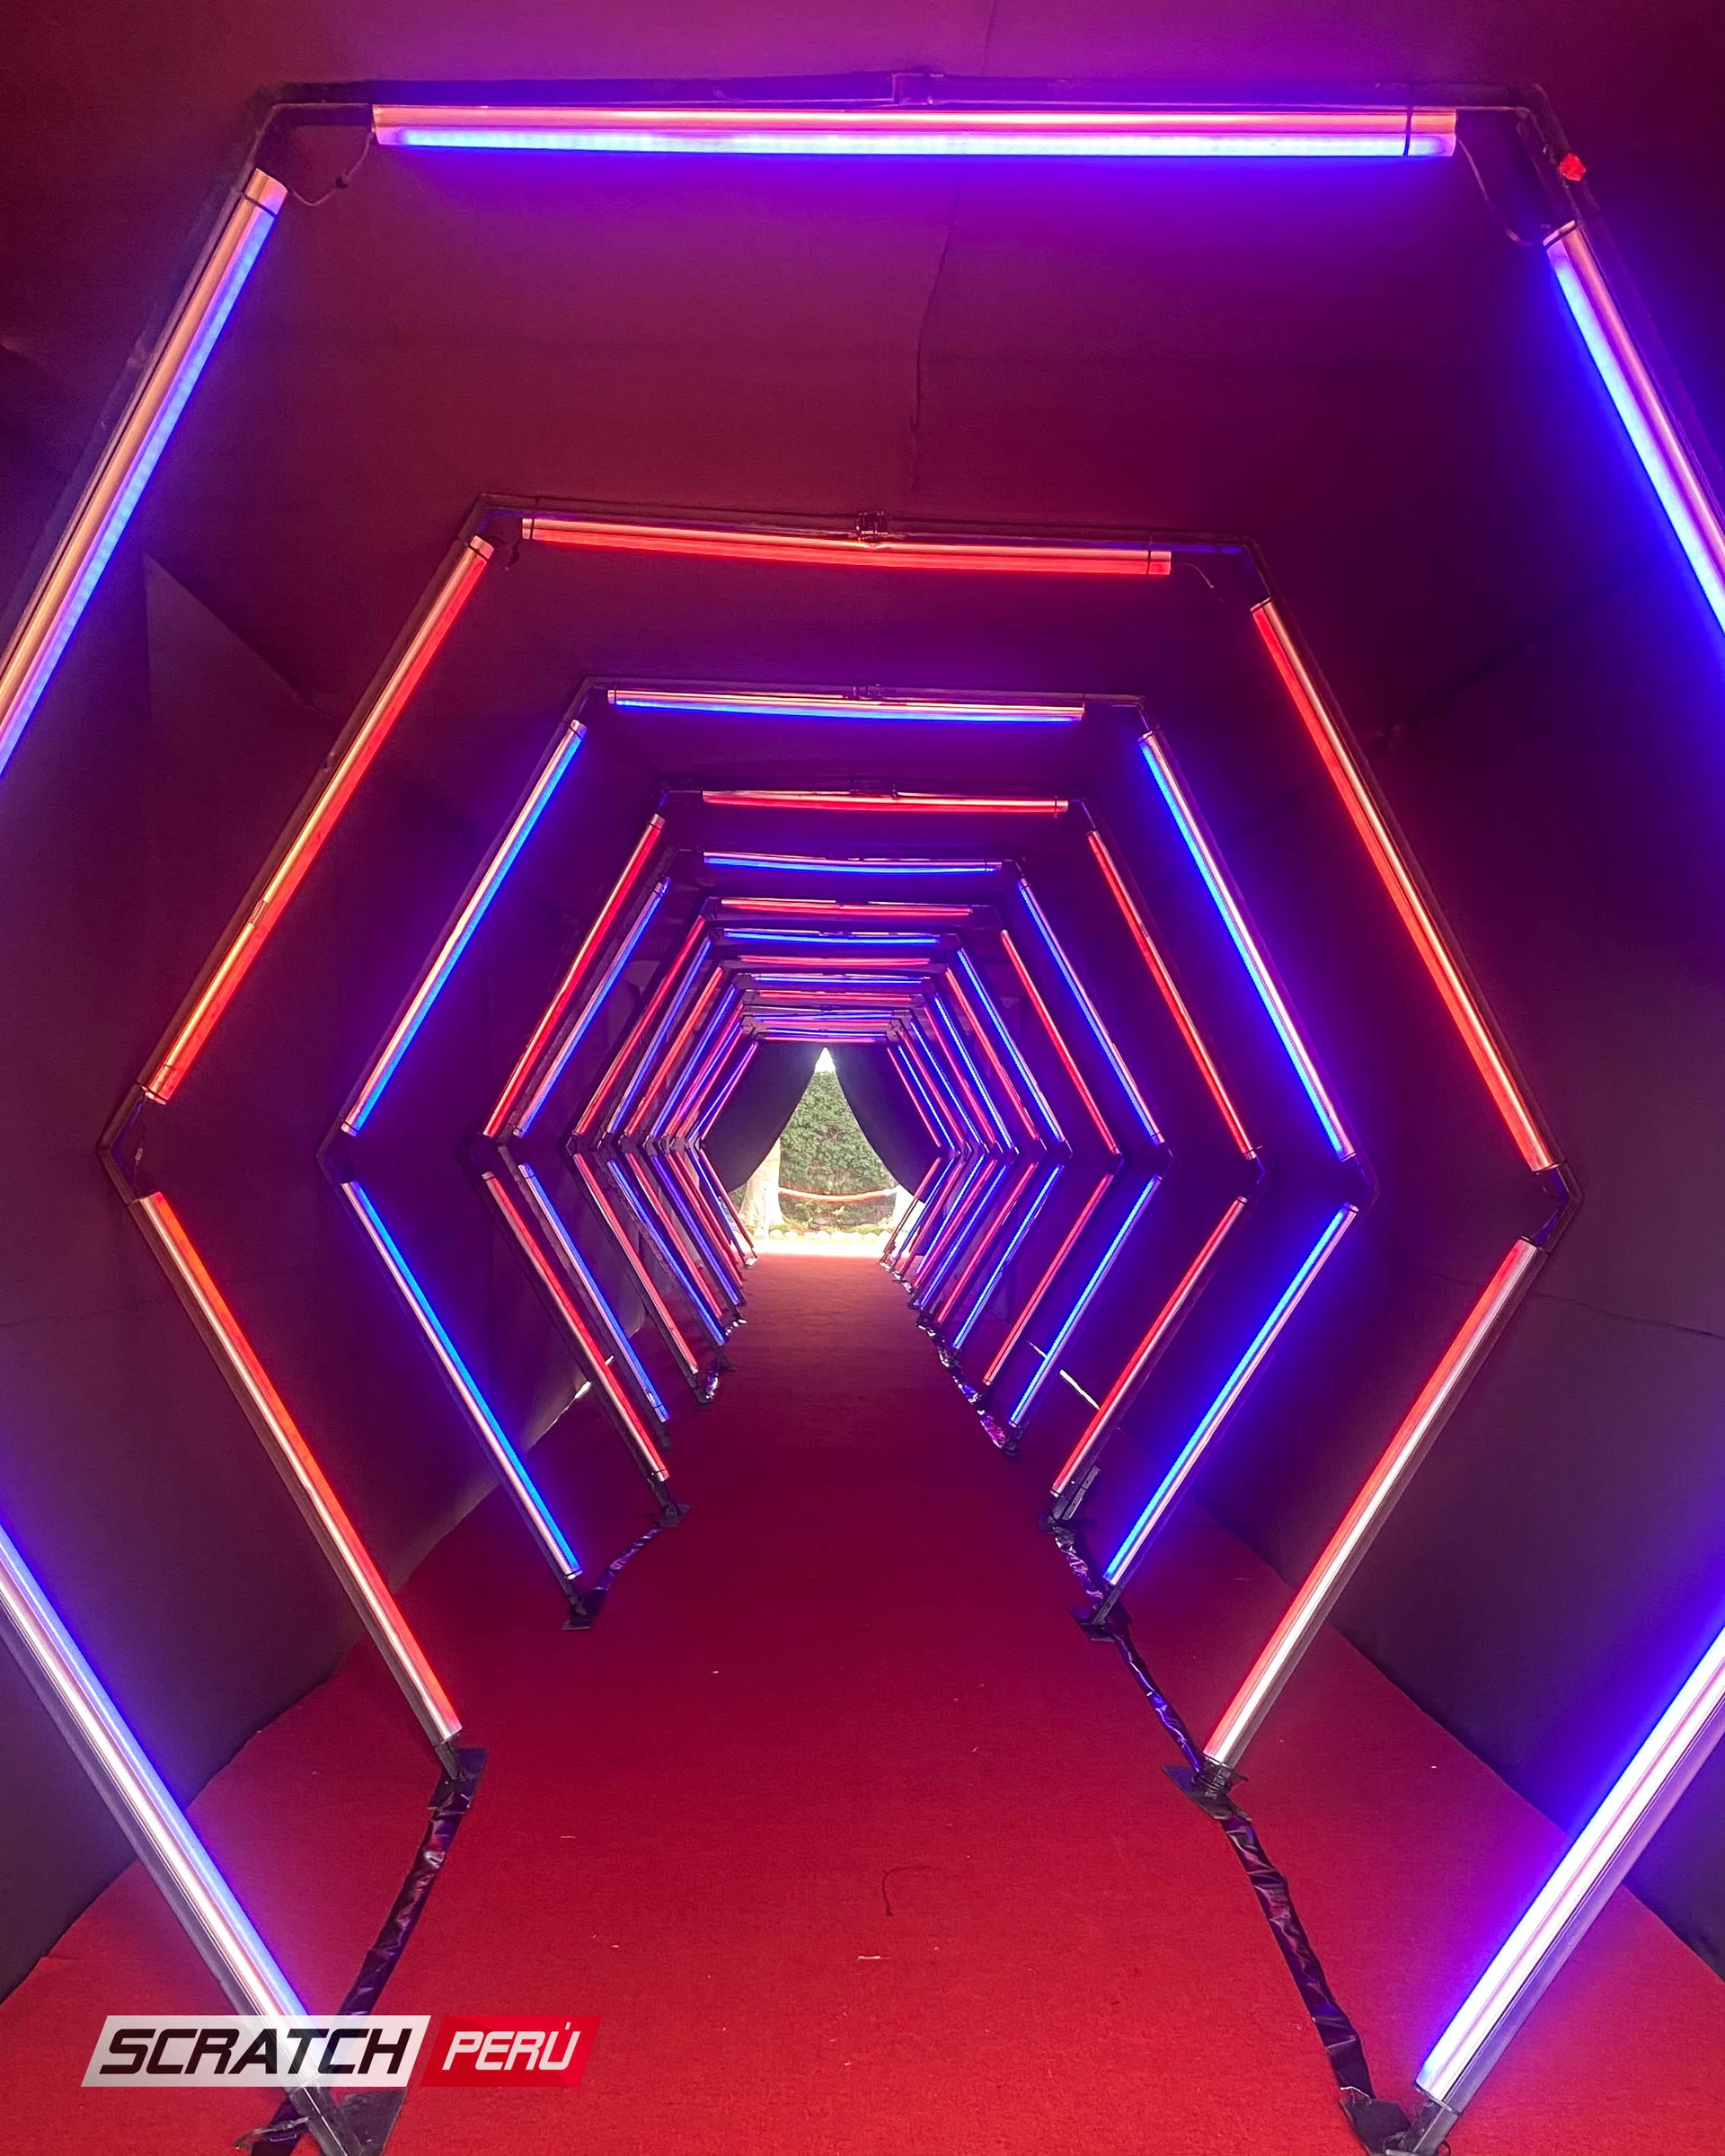 Túnel LED hexagonal rojo y azul: Iluminación llamativa en un pasillo destacado, añadiendo un toque de estilo. - Túnel hexagonal led - scratch perú.